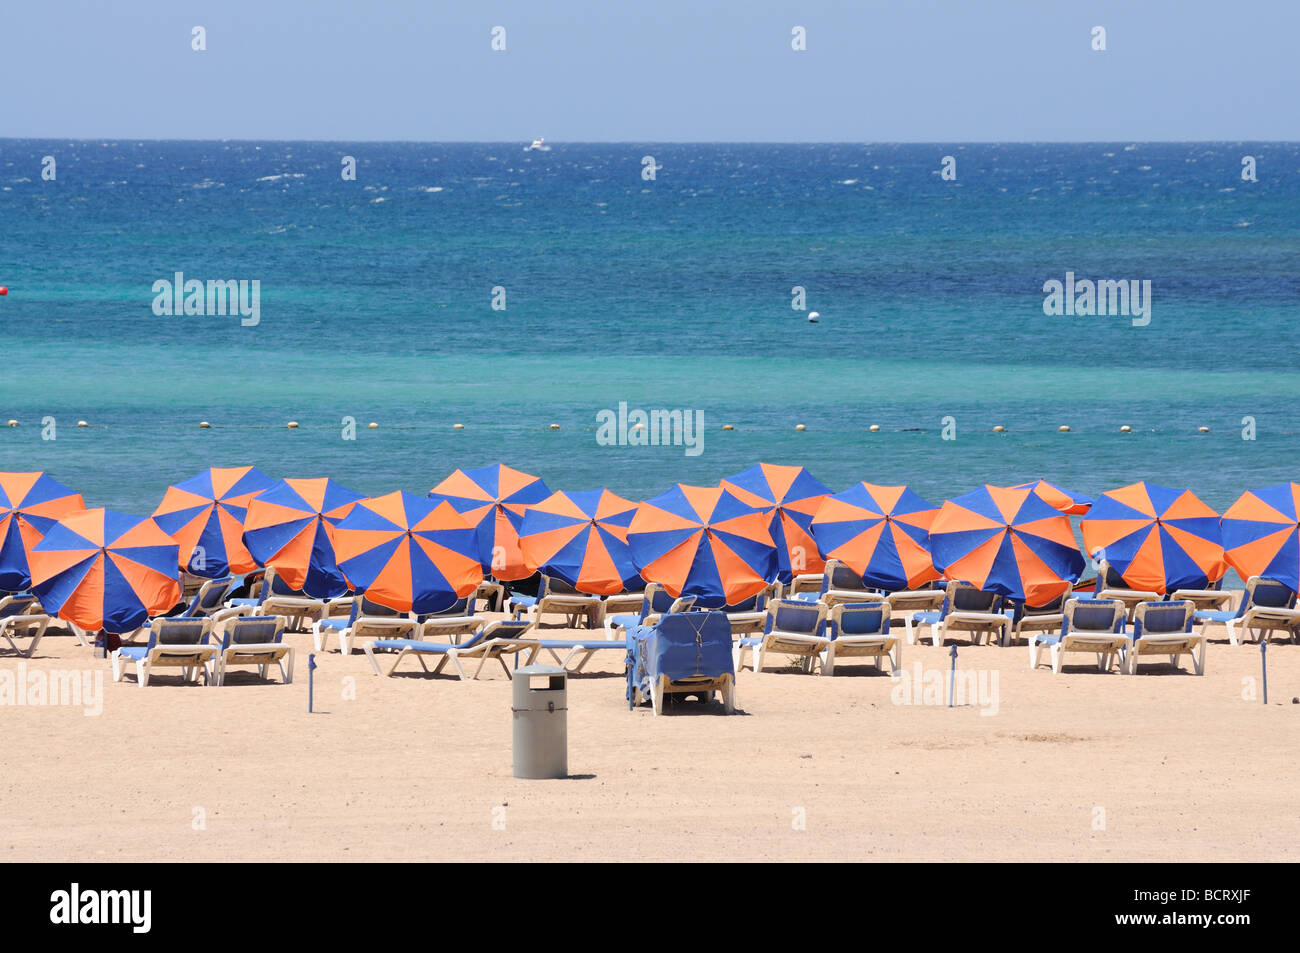 Sonnenliege am Strand von Caleta de Fuste, Kanarischen Insel Fuerteventura, Spanien Stockfoto